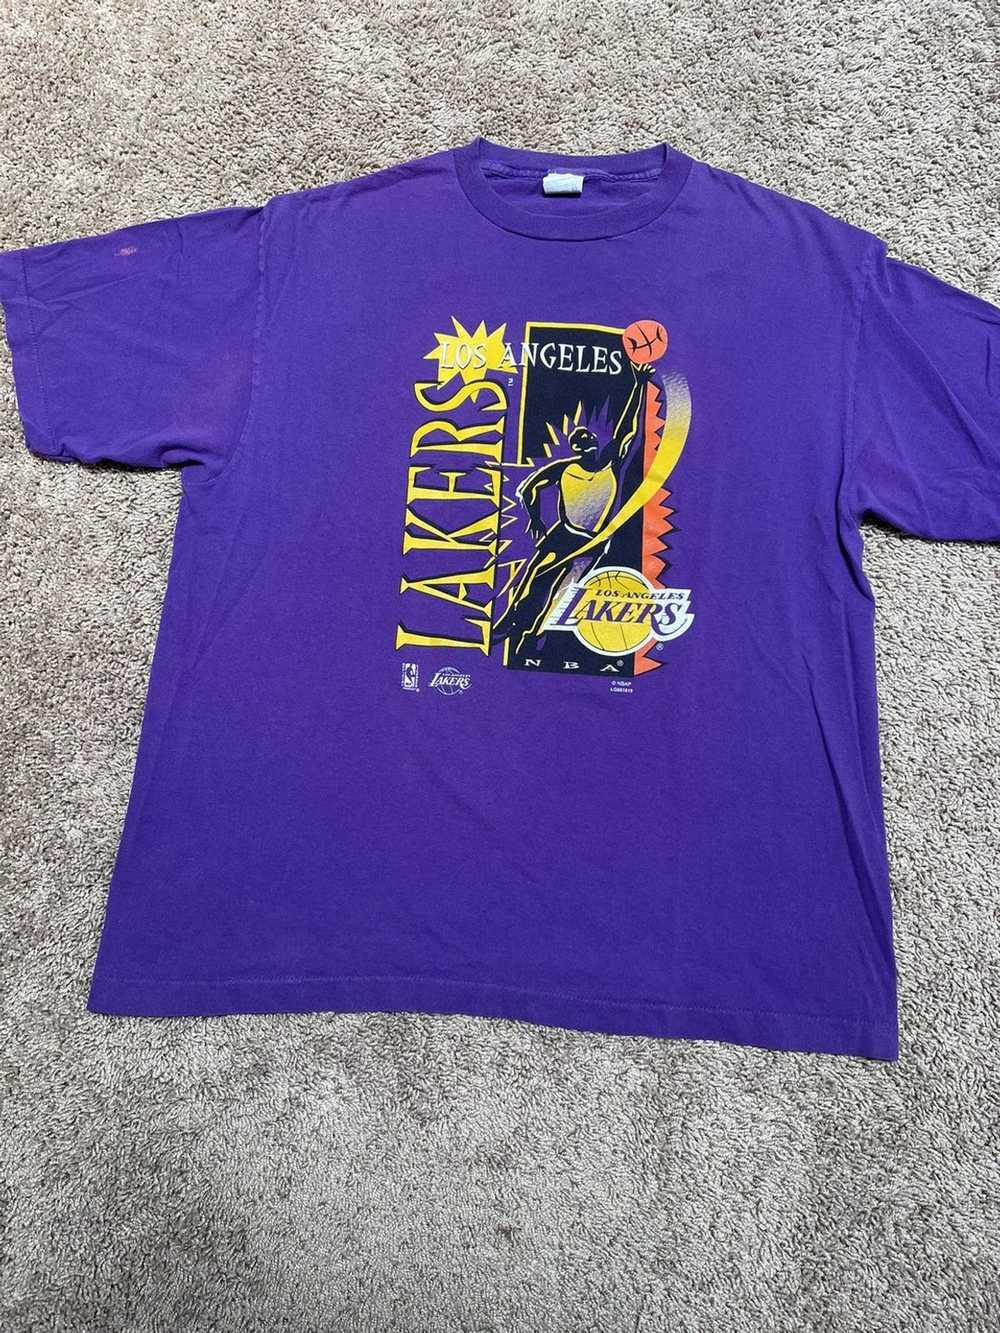 intex, Tops, Lakers Vintage T Shirt